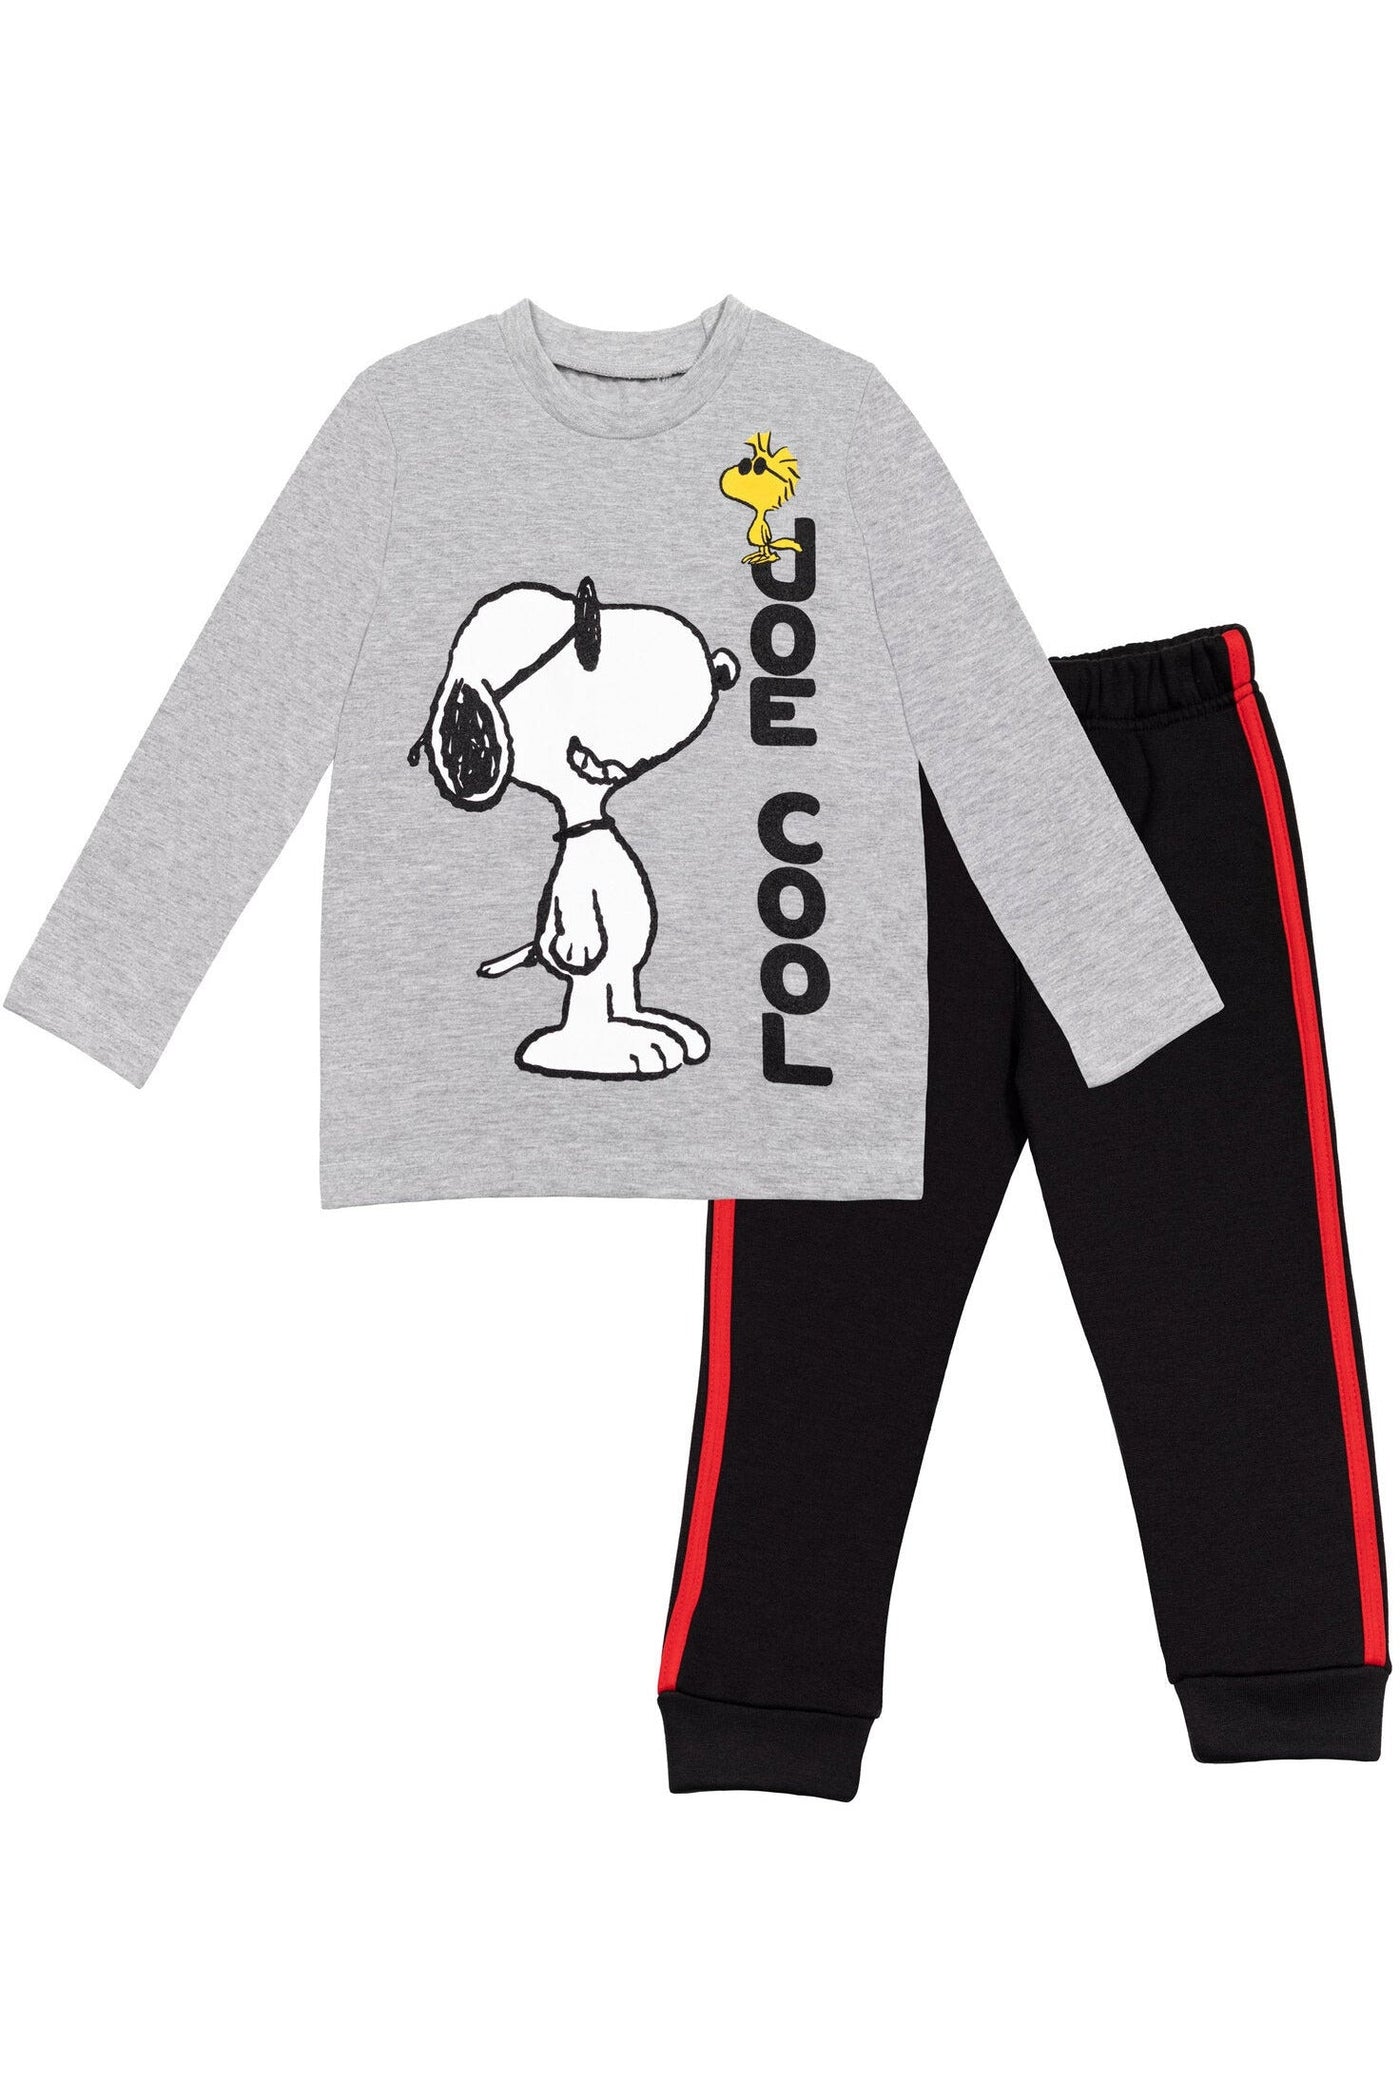 Peanuts Jogger Long Sleeve Graphic T-Shirt & Fleece Pants Set